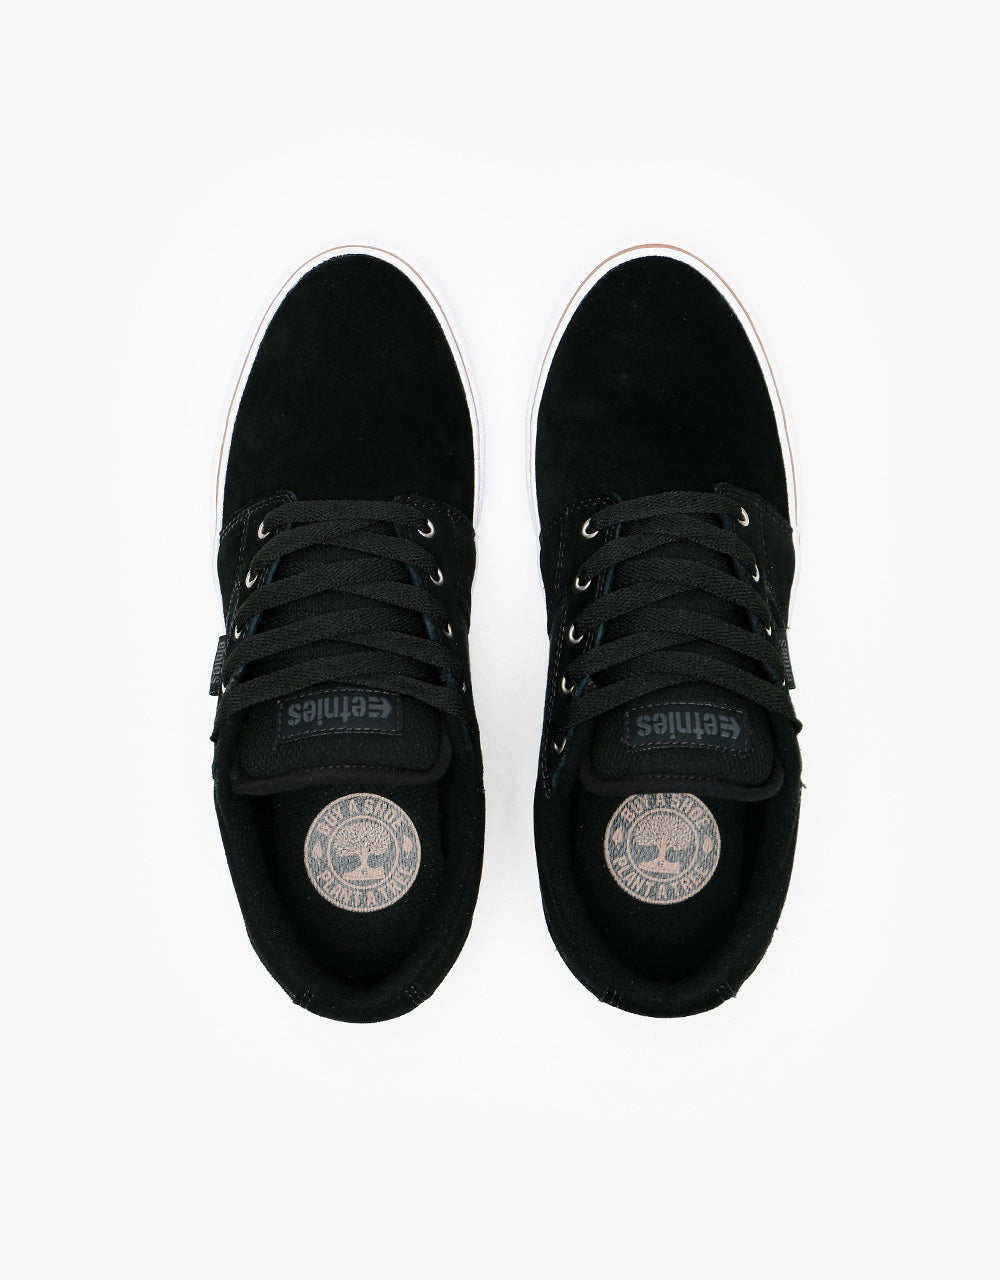 Etnies Barge LS Skate Shoes - Black